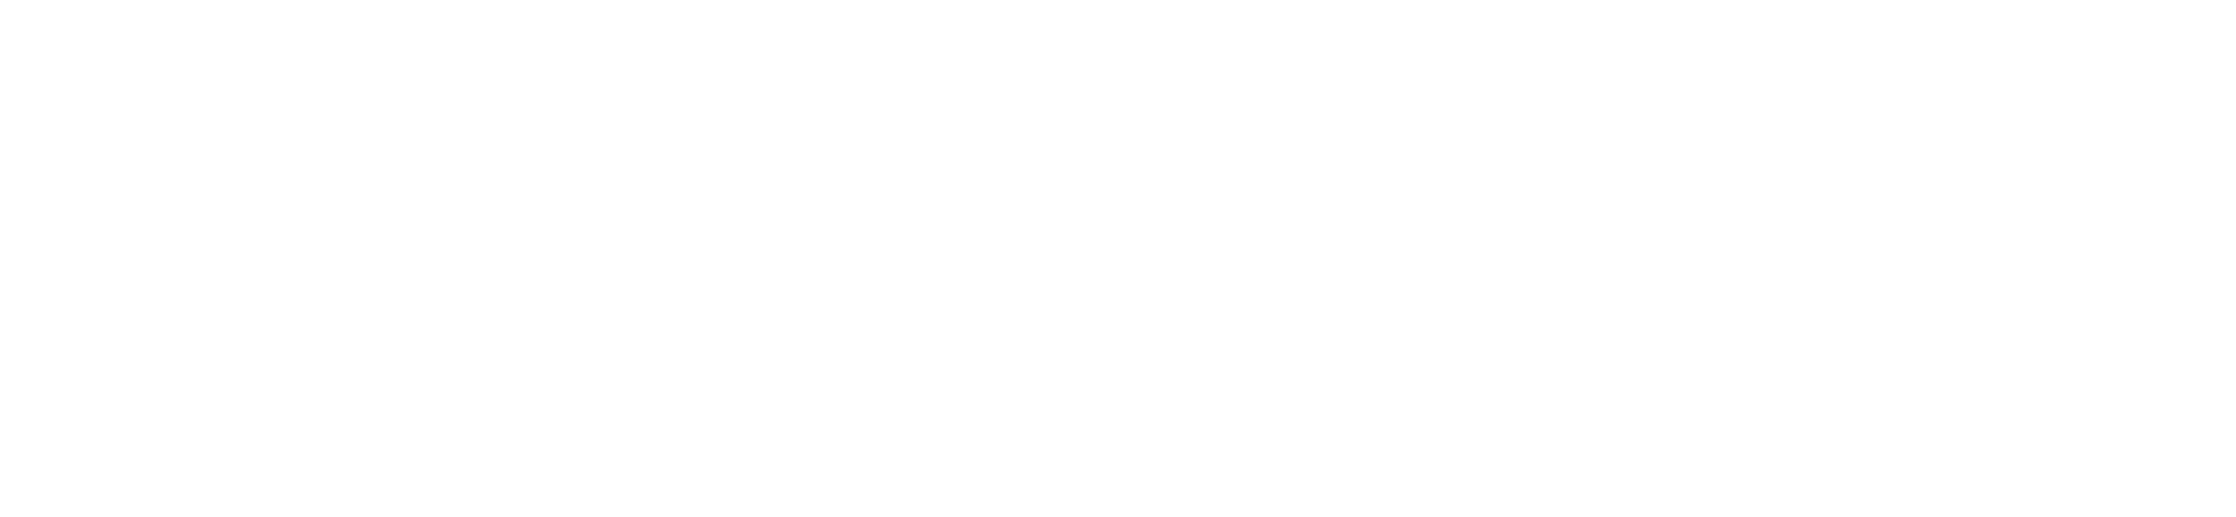 Cluedit logo light